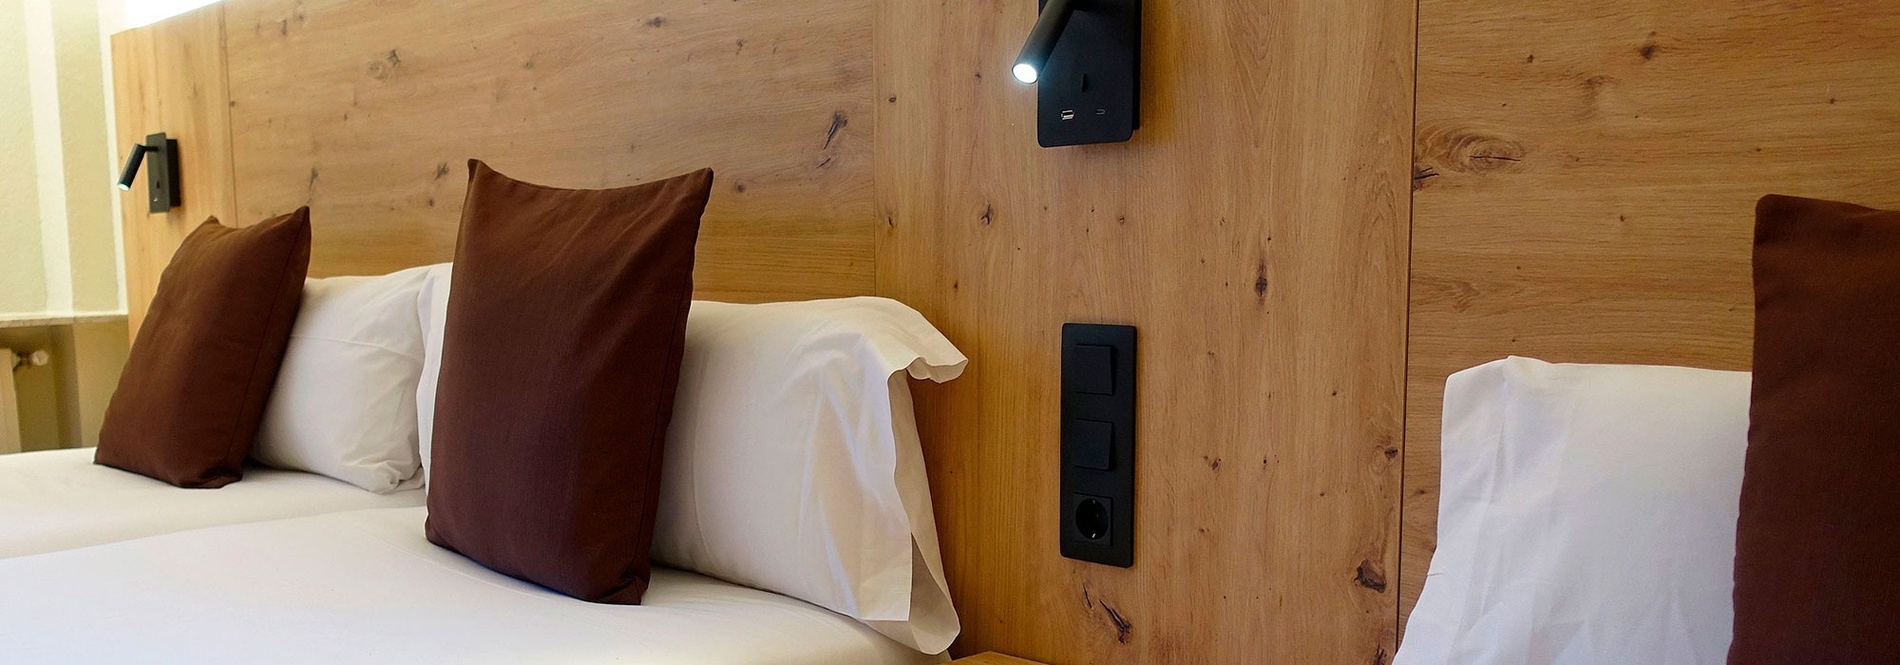 una habitació d' hotel amb una cabecera de fusta i tres llits